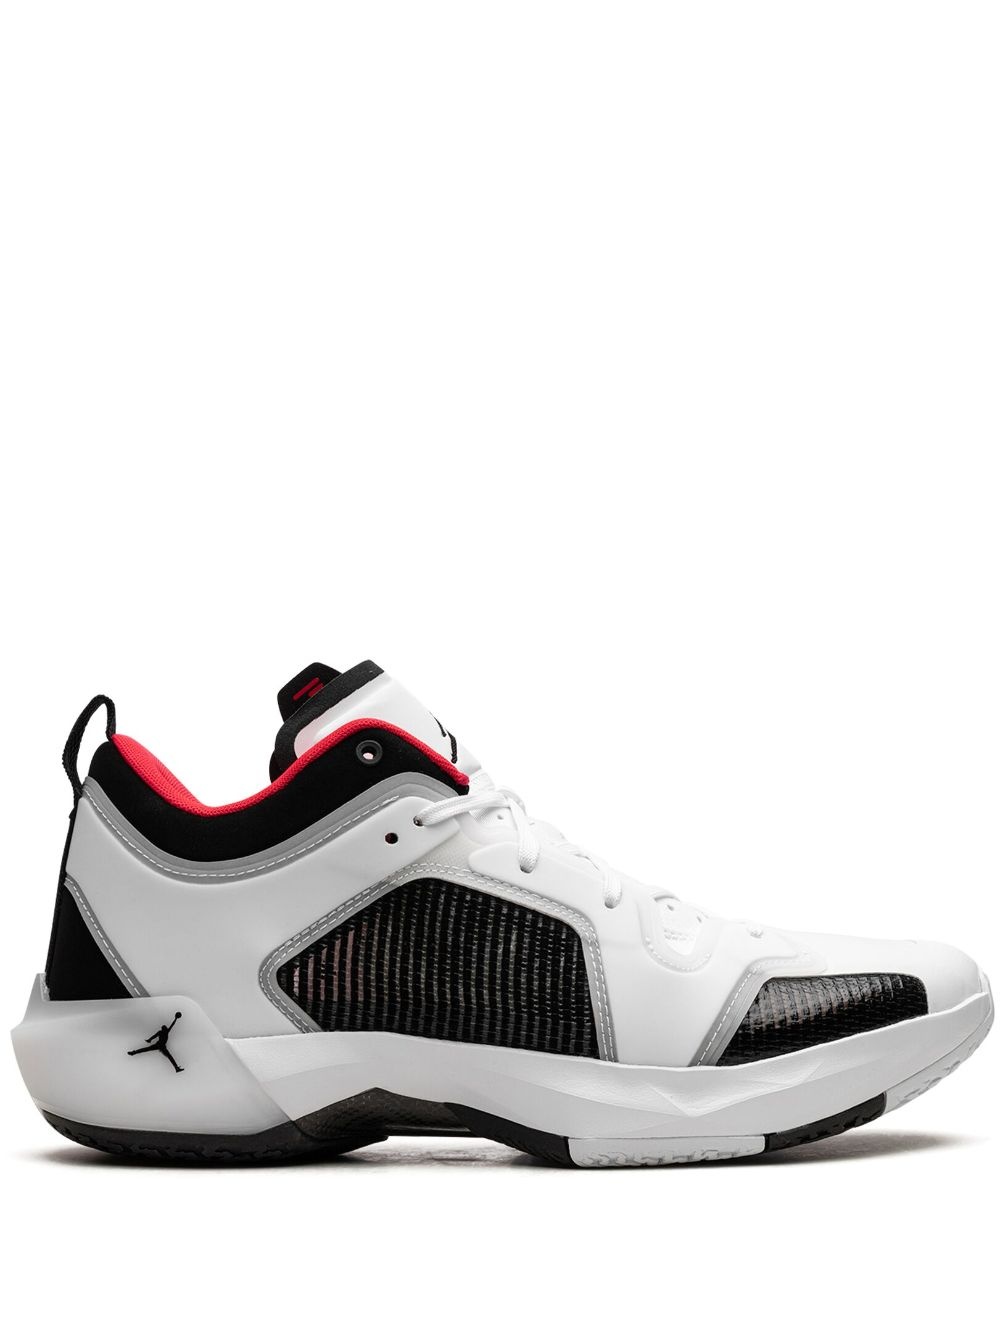 Air Jordan 37 Low "Siren Red" sneakers - 1